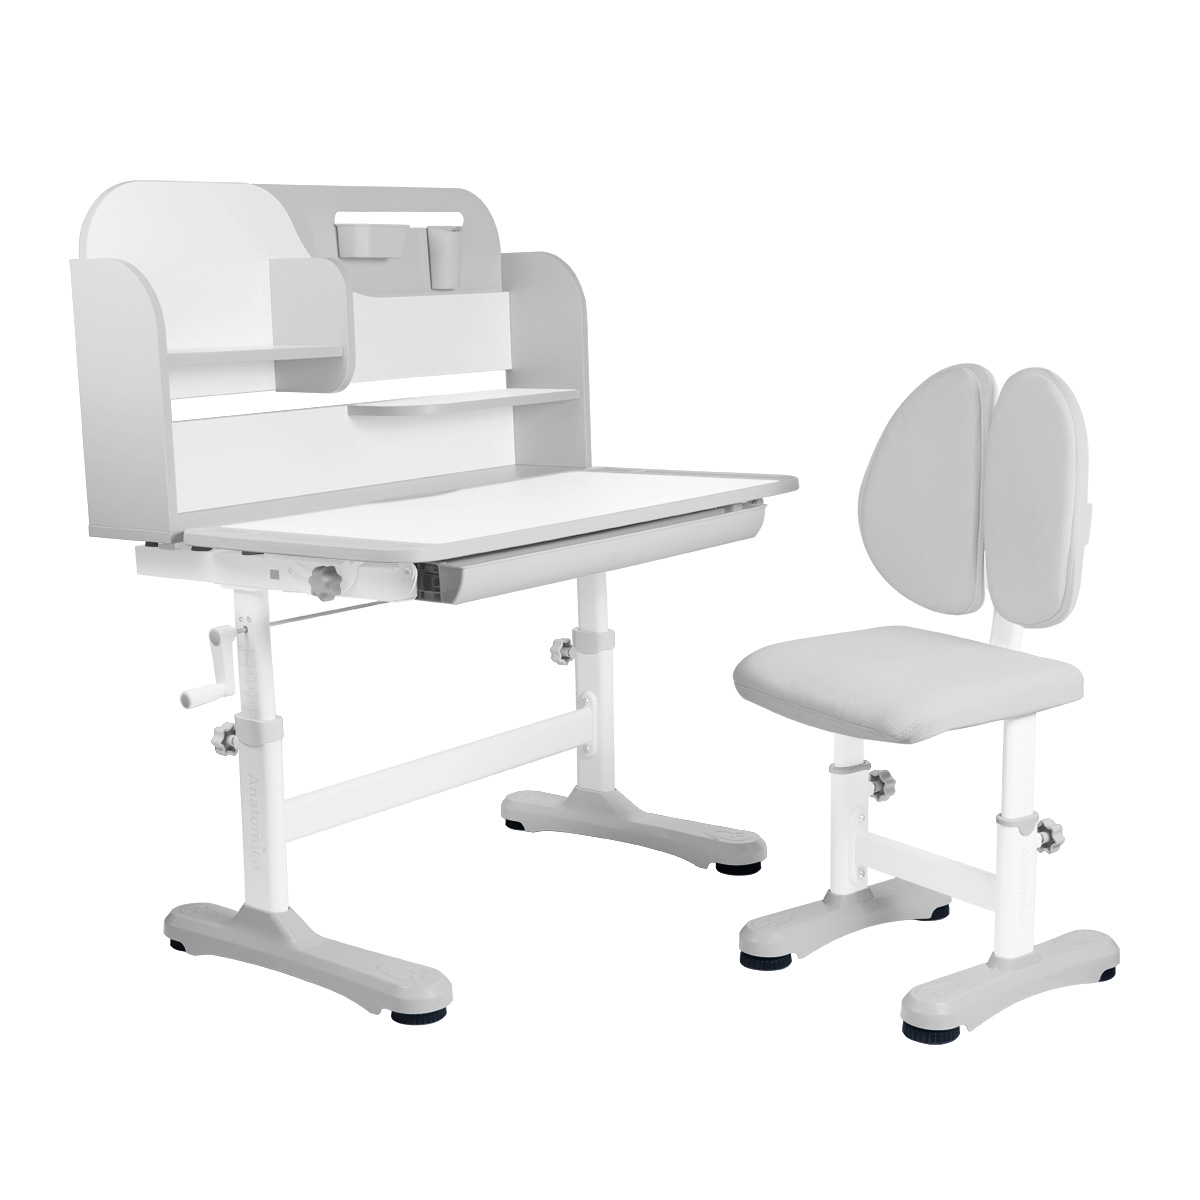 Комплект Anatomica Amadeo парта, стул, надстройка, выдвижной ящик, серый комплект anatomica fiona парта стул надстройка выдвижной ящик серый